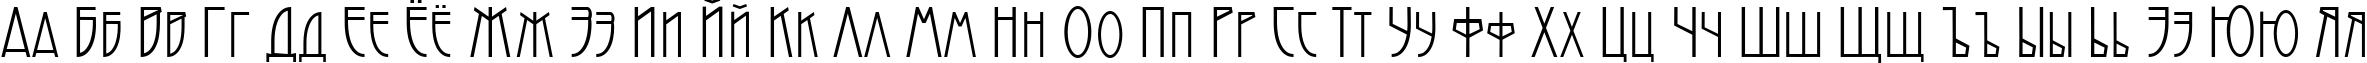 Пример написания русского алфавита шрифтом Modernist Nouveau